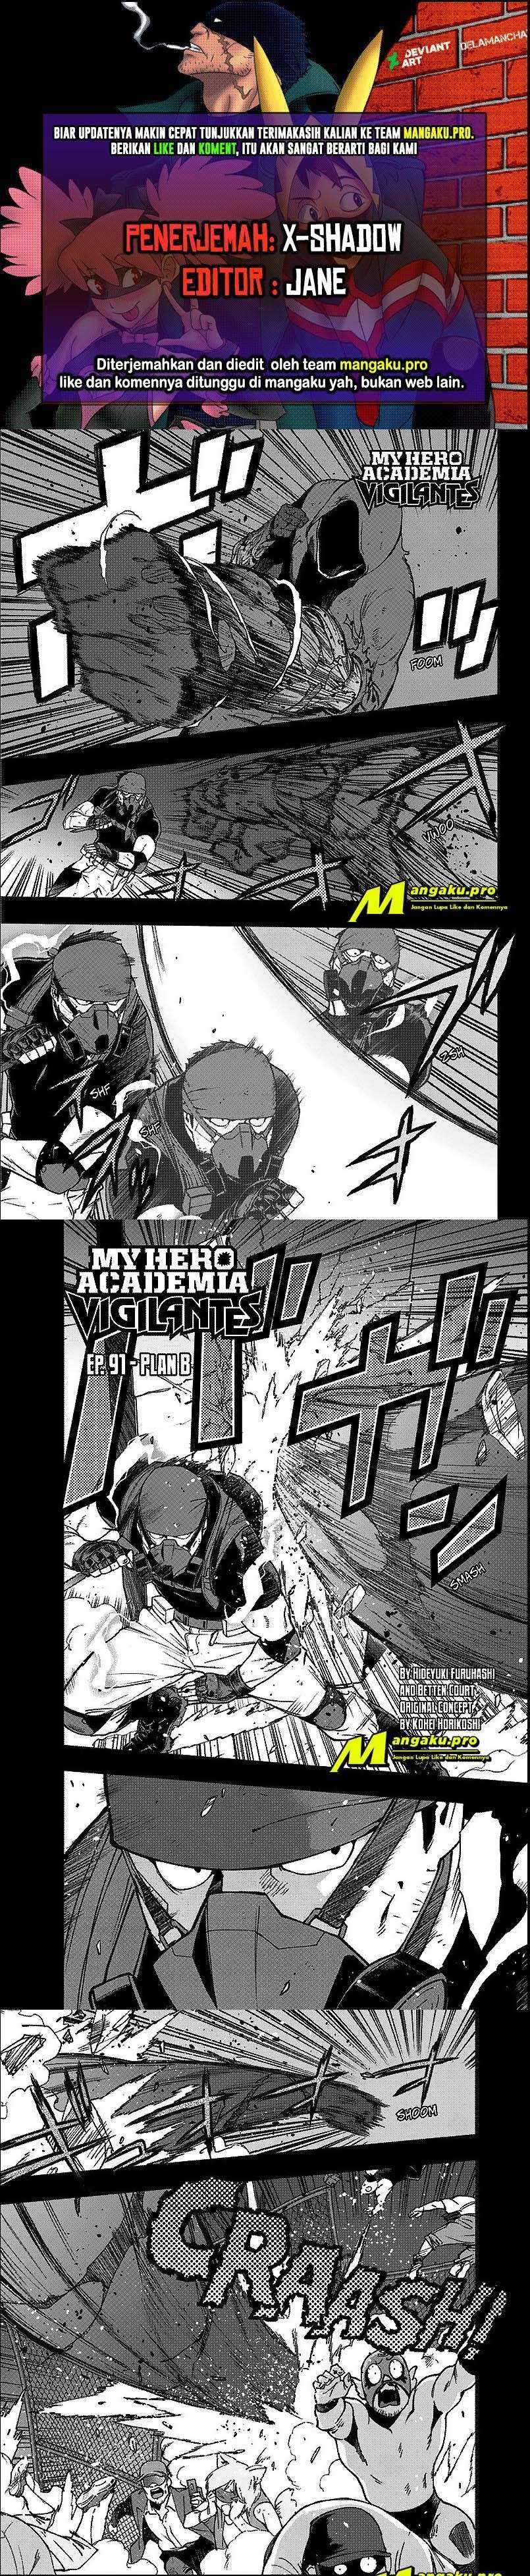 Vigilante Boku No Hero Academia Illegals Chapter 91